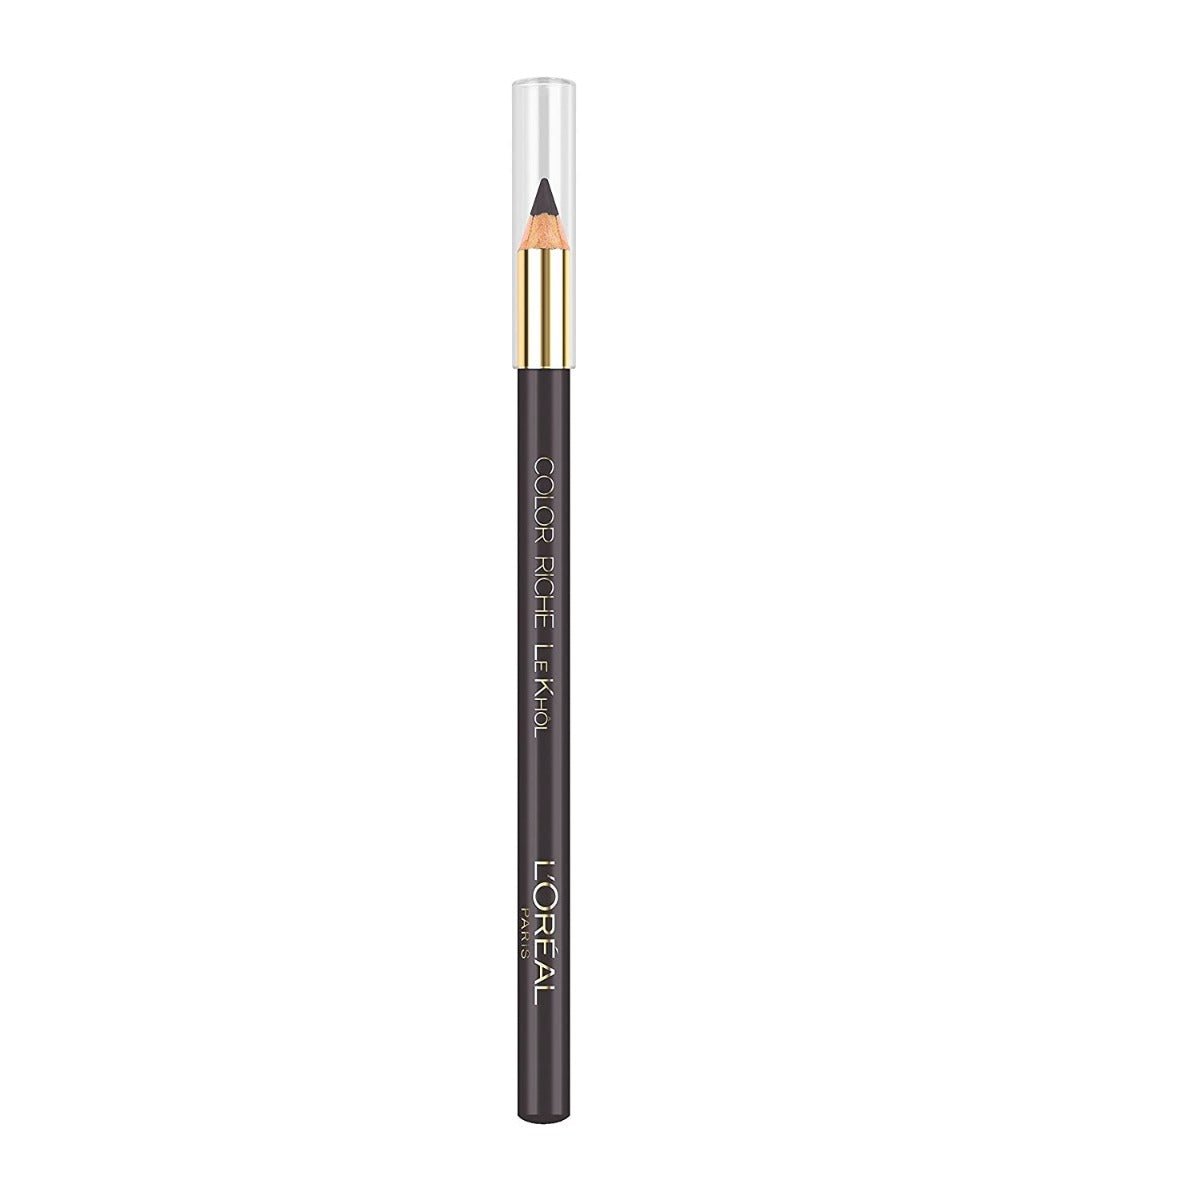 Loreal Color Rich Le Khol Pencil - 111 Urban Grey - AllurebeautypkLoreal Color Rich Le Khol Pencil - 111 Urban Grey